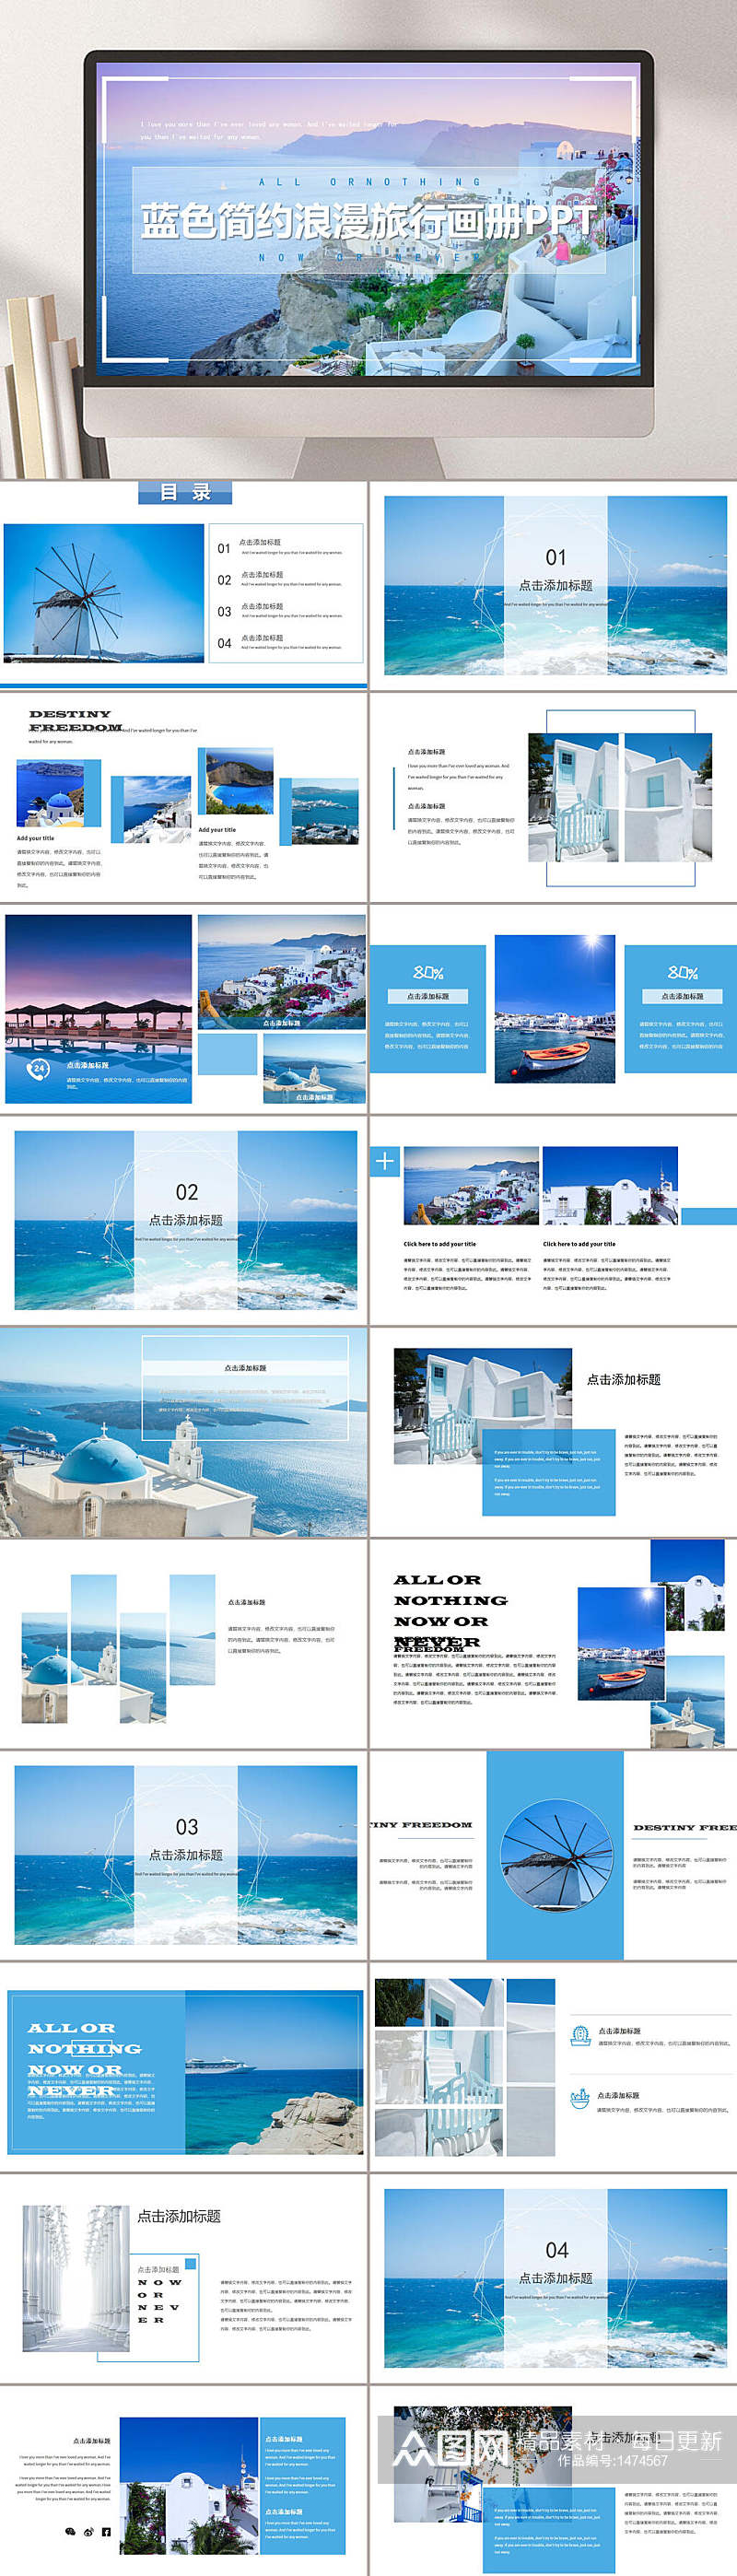 旅行画册风格模版蓝色简约企业PPT模板素材